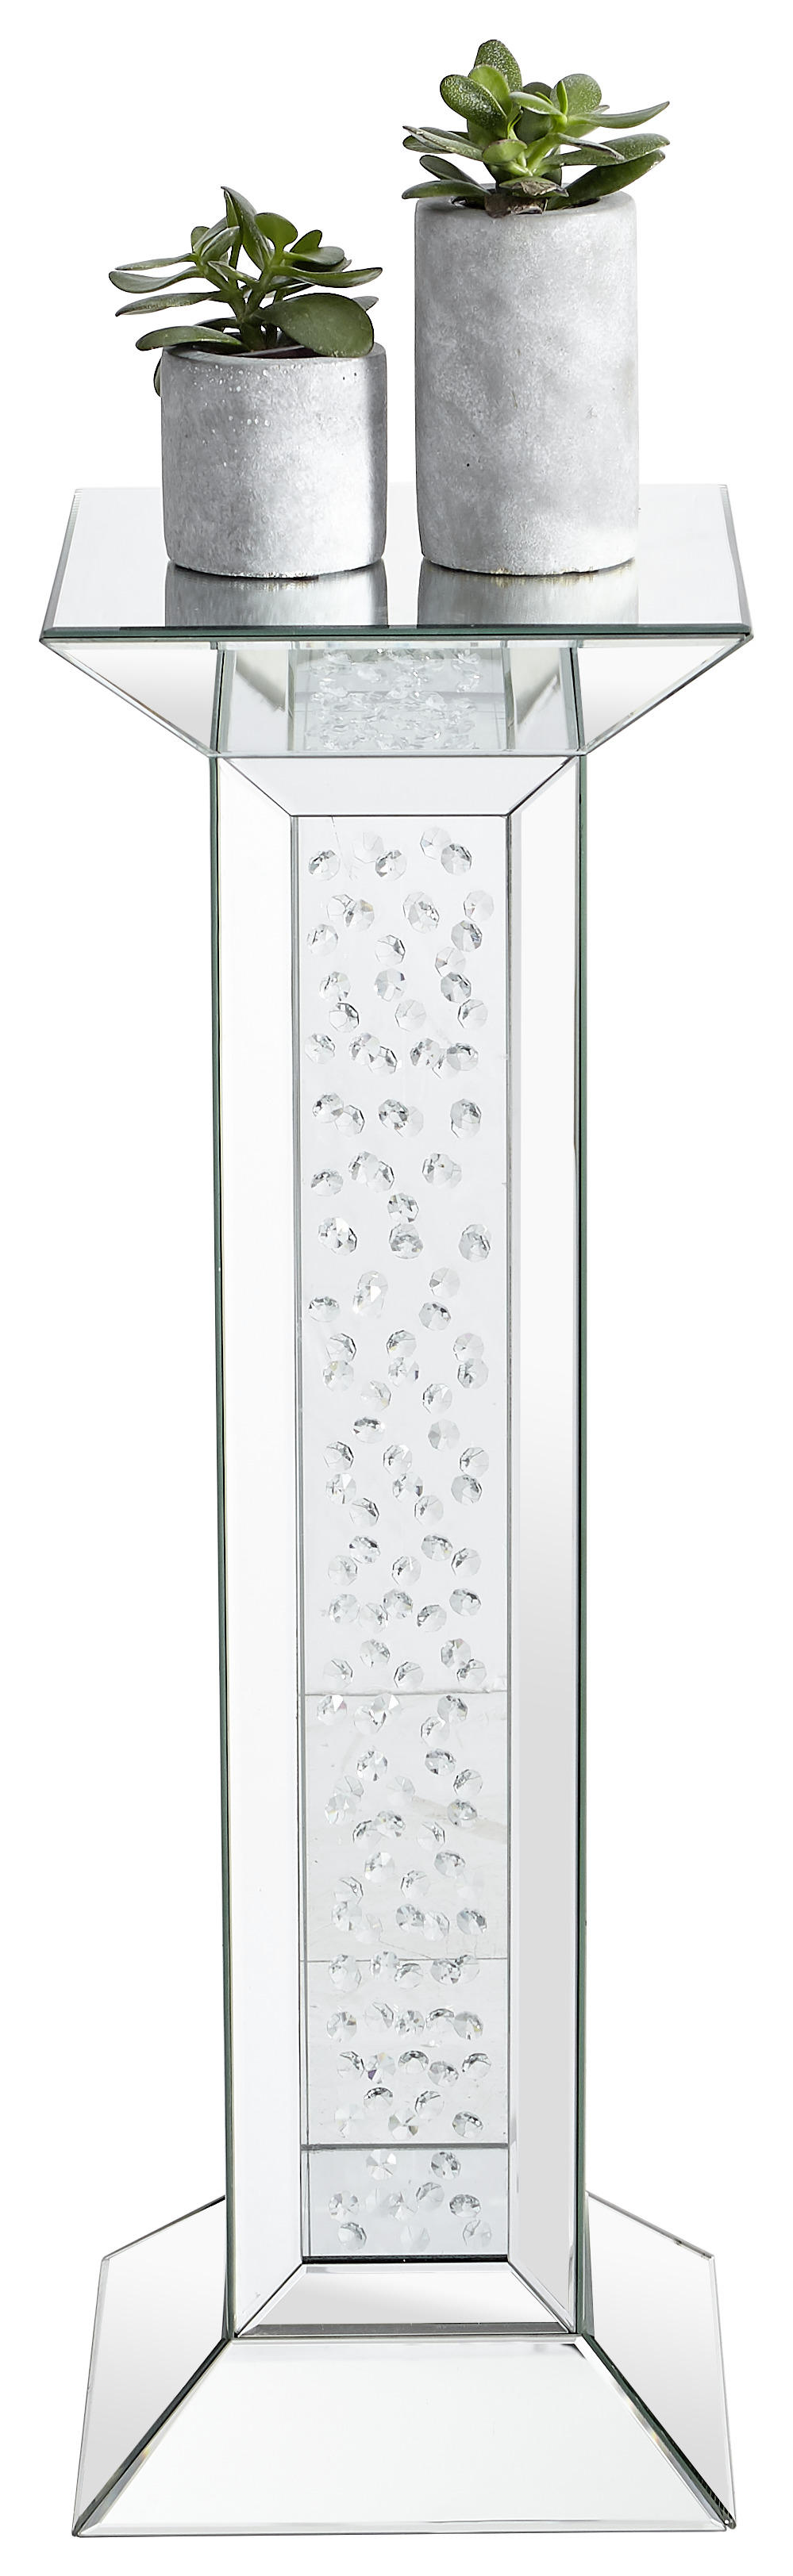 DEKOSÄULE verspiegelt Glas  - Silberfarben, Design, Glas (30,5/30,5/89cm) - Xora